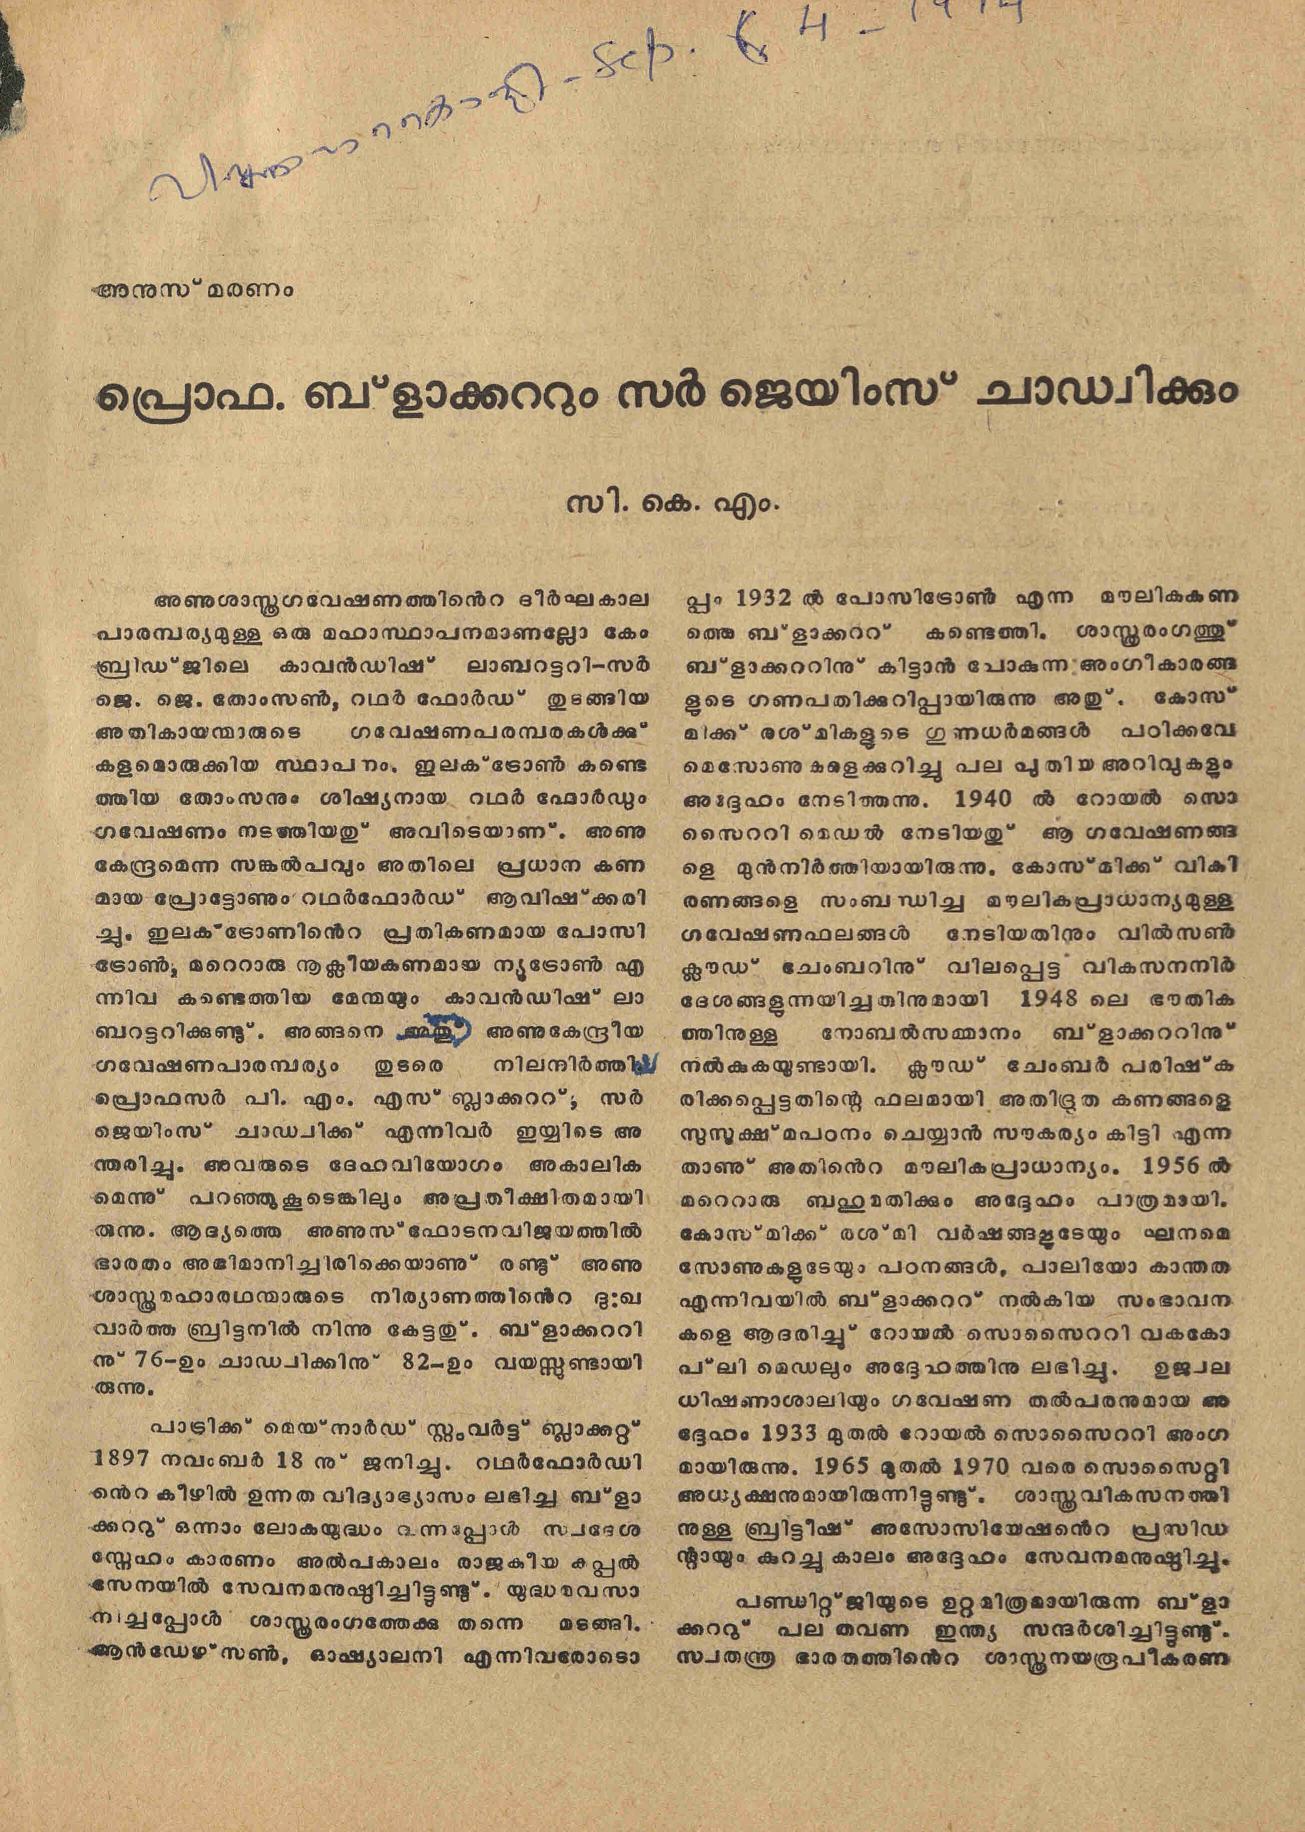 1974 - പ്രൊഫ.ബ്ലാക്കറ്റും സർ ജെയിംസ് ചാഡ്വിക്കും - സി. കെ മൂസ്സത്